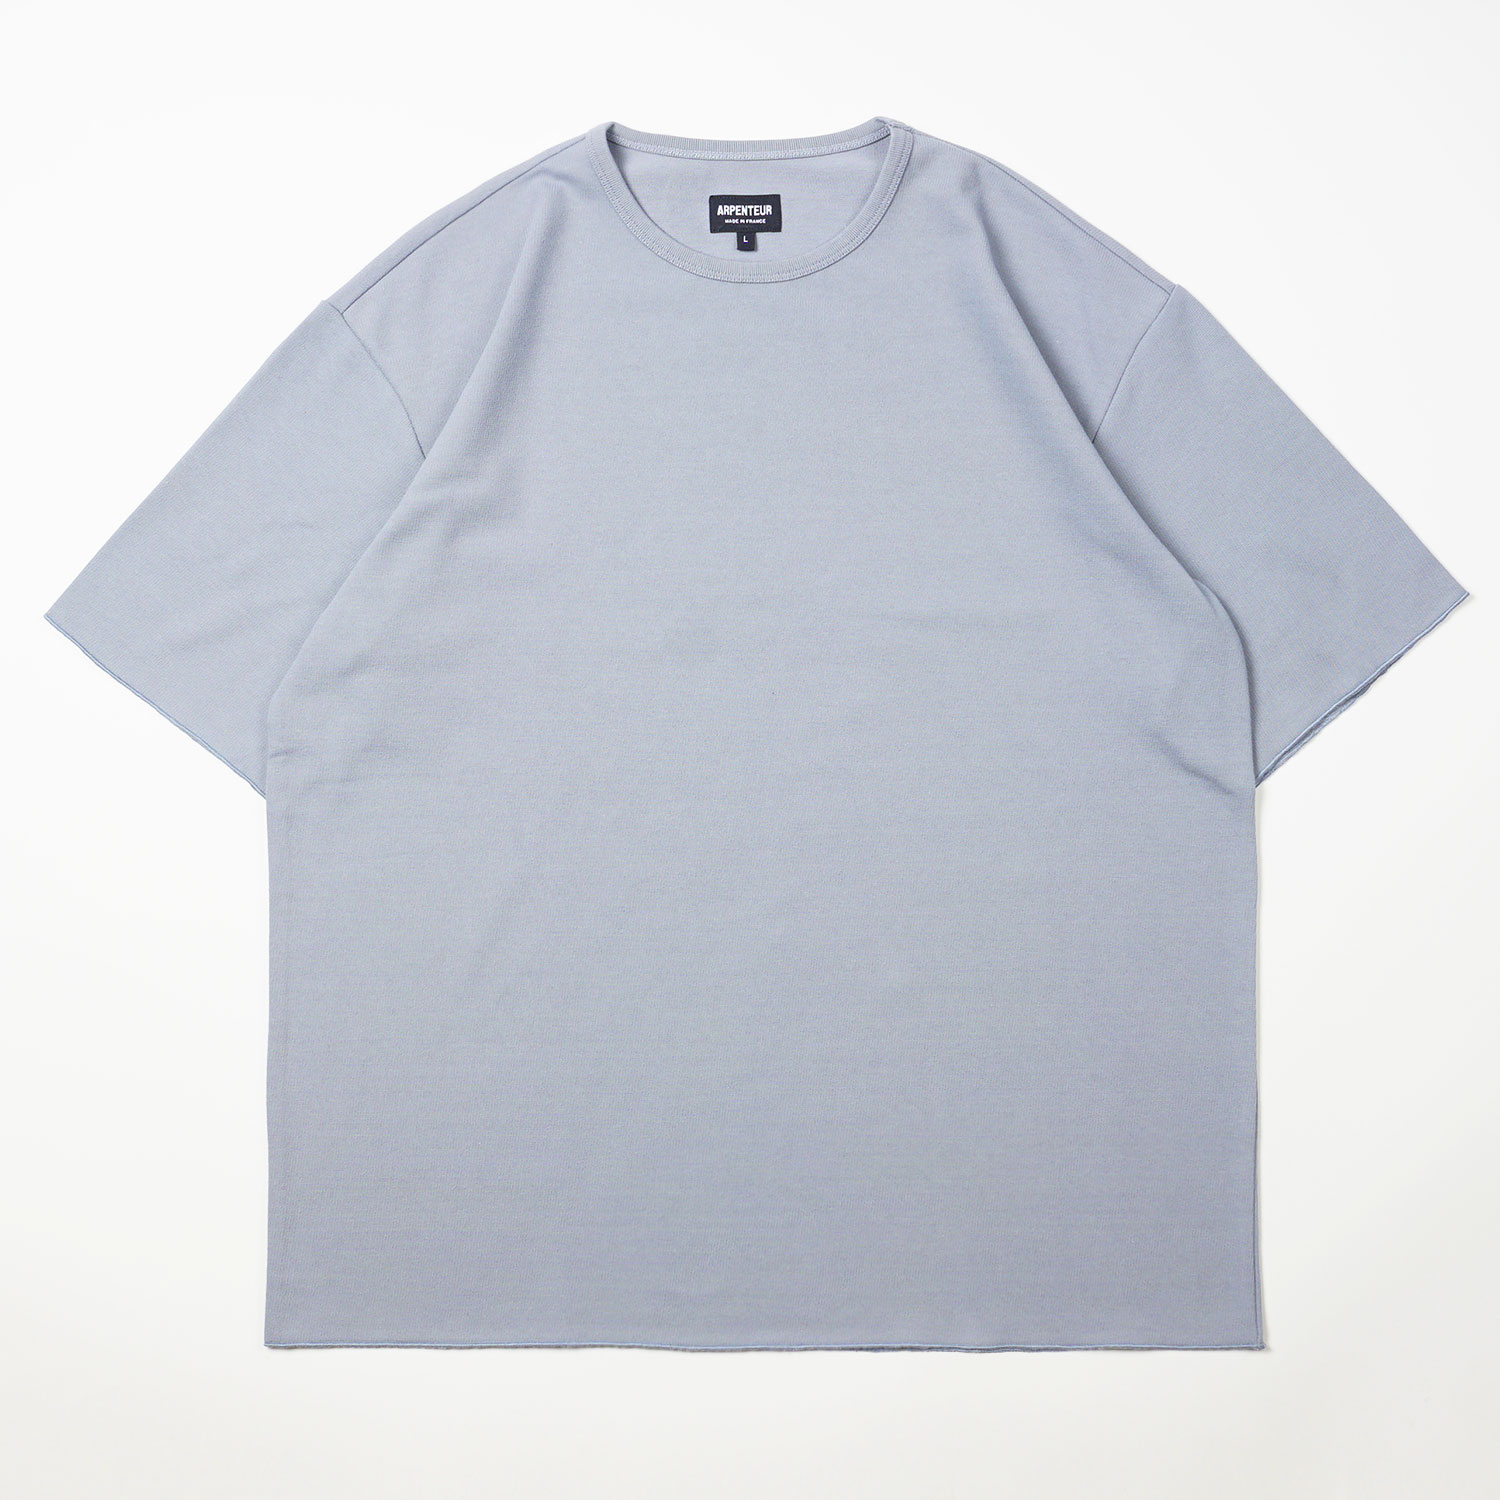 T-shirt Pontus coloris Bleu saxe par Arpenteur